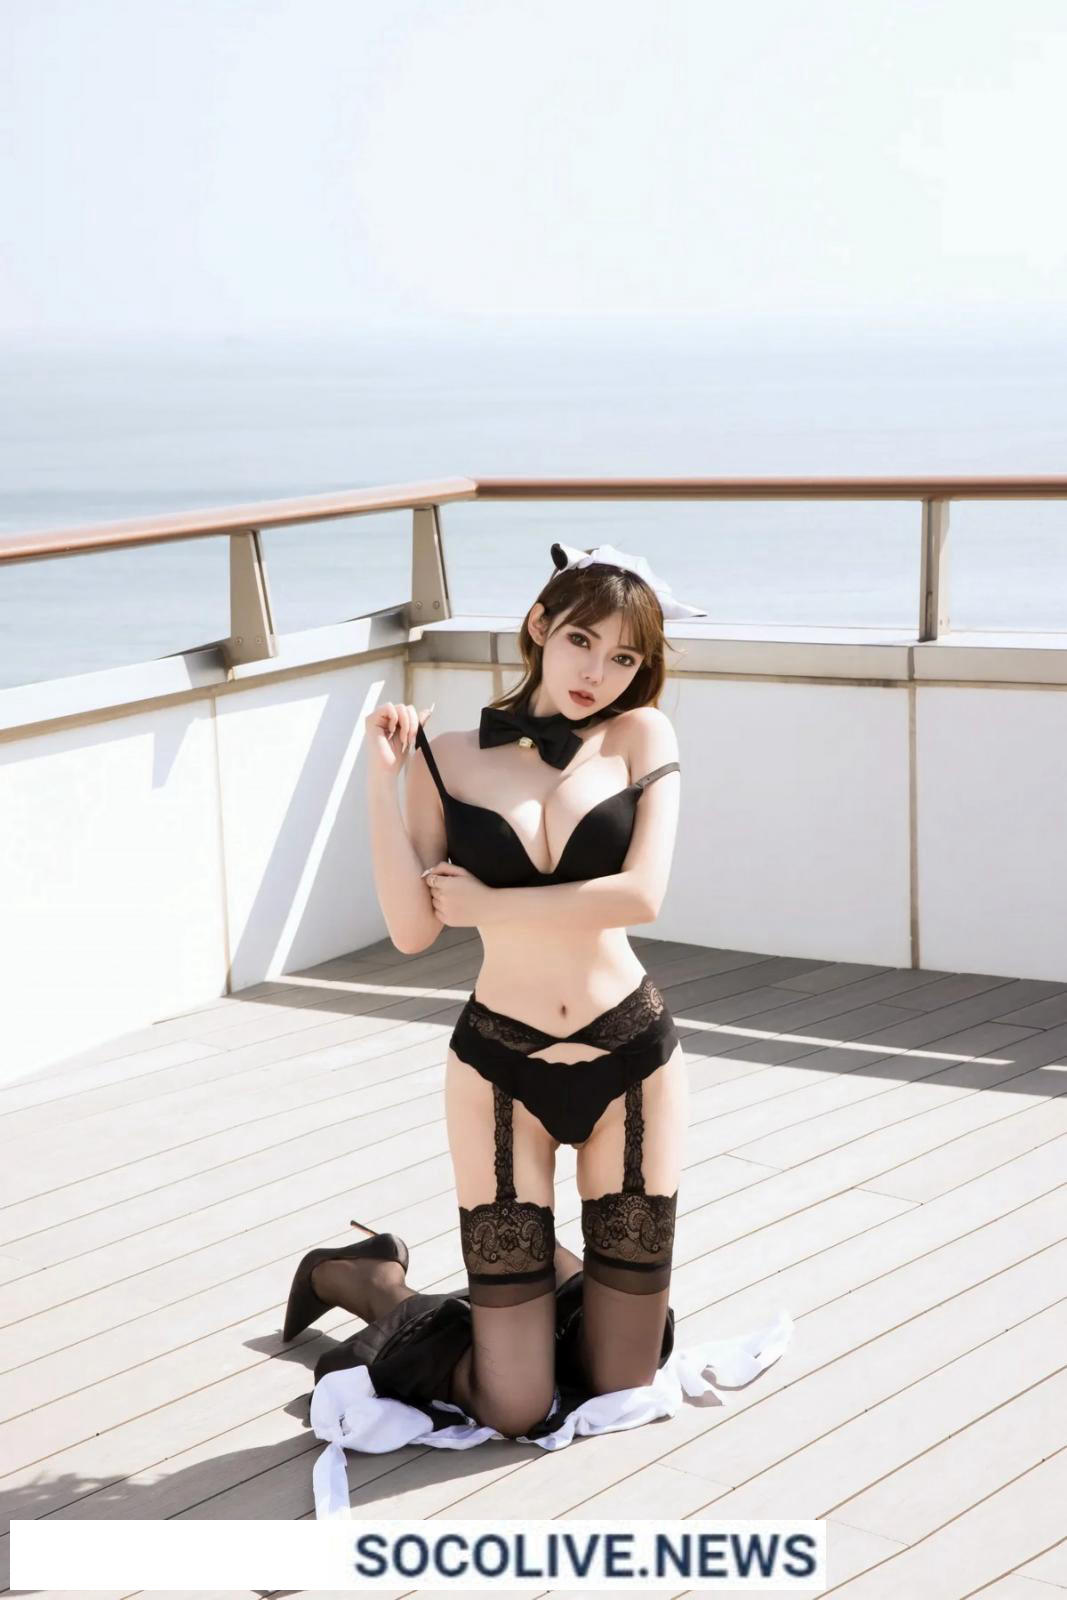 55+ Ảnh Nữ Hầu Gái Sexy Bị Bắt Trói Trên Boong Tàu - Socolive